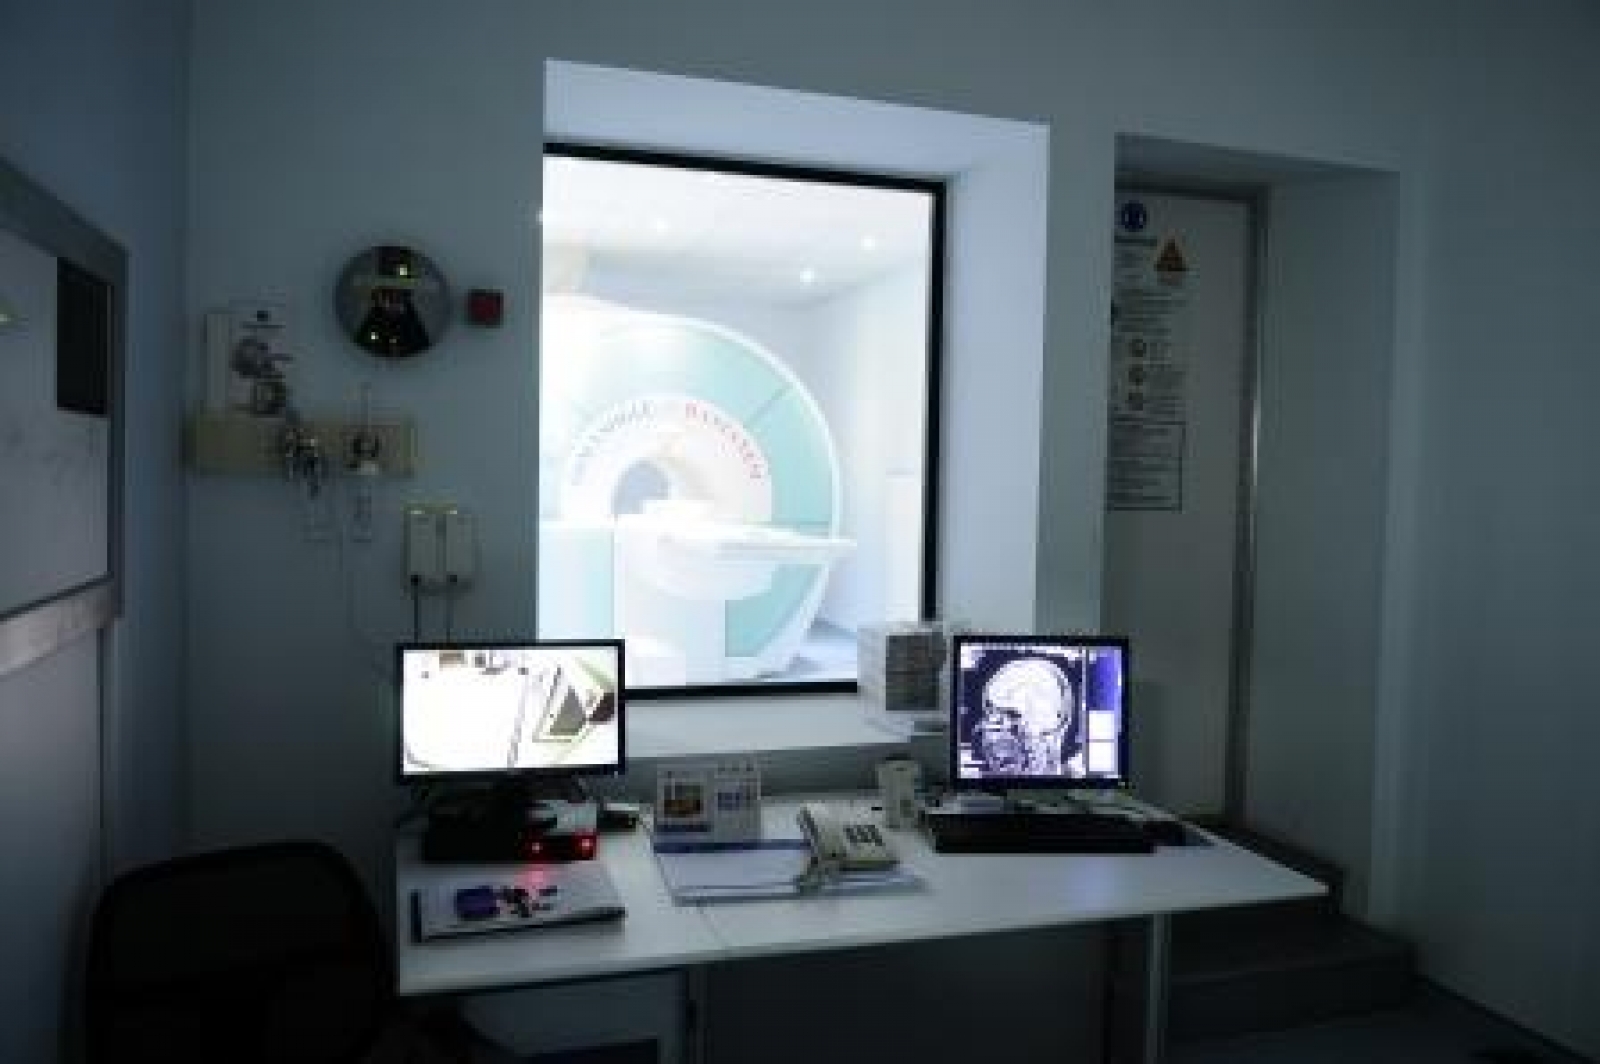 Manyetik Rezonans - (MRI)